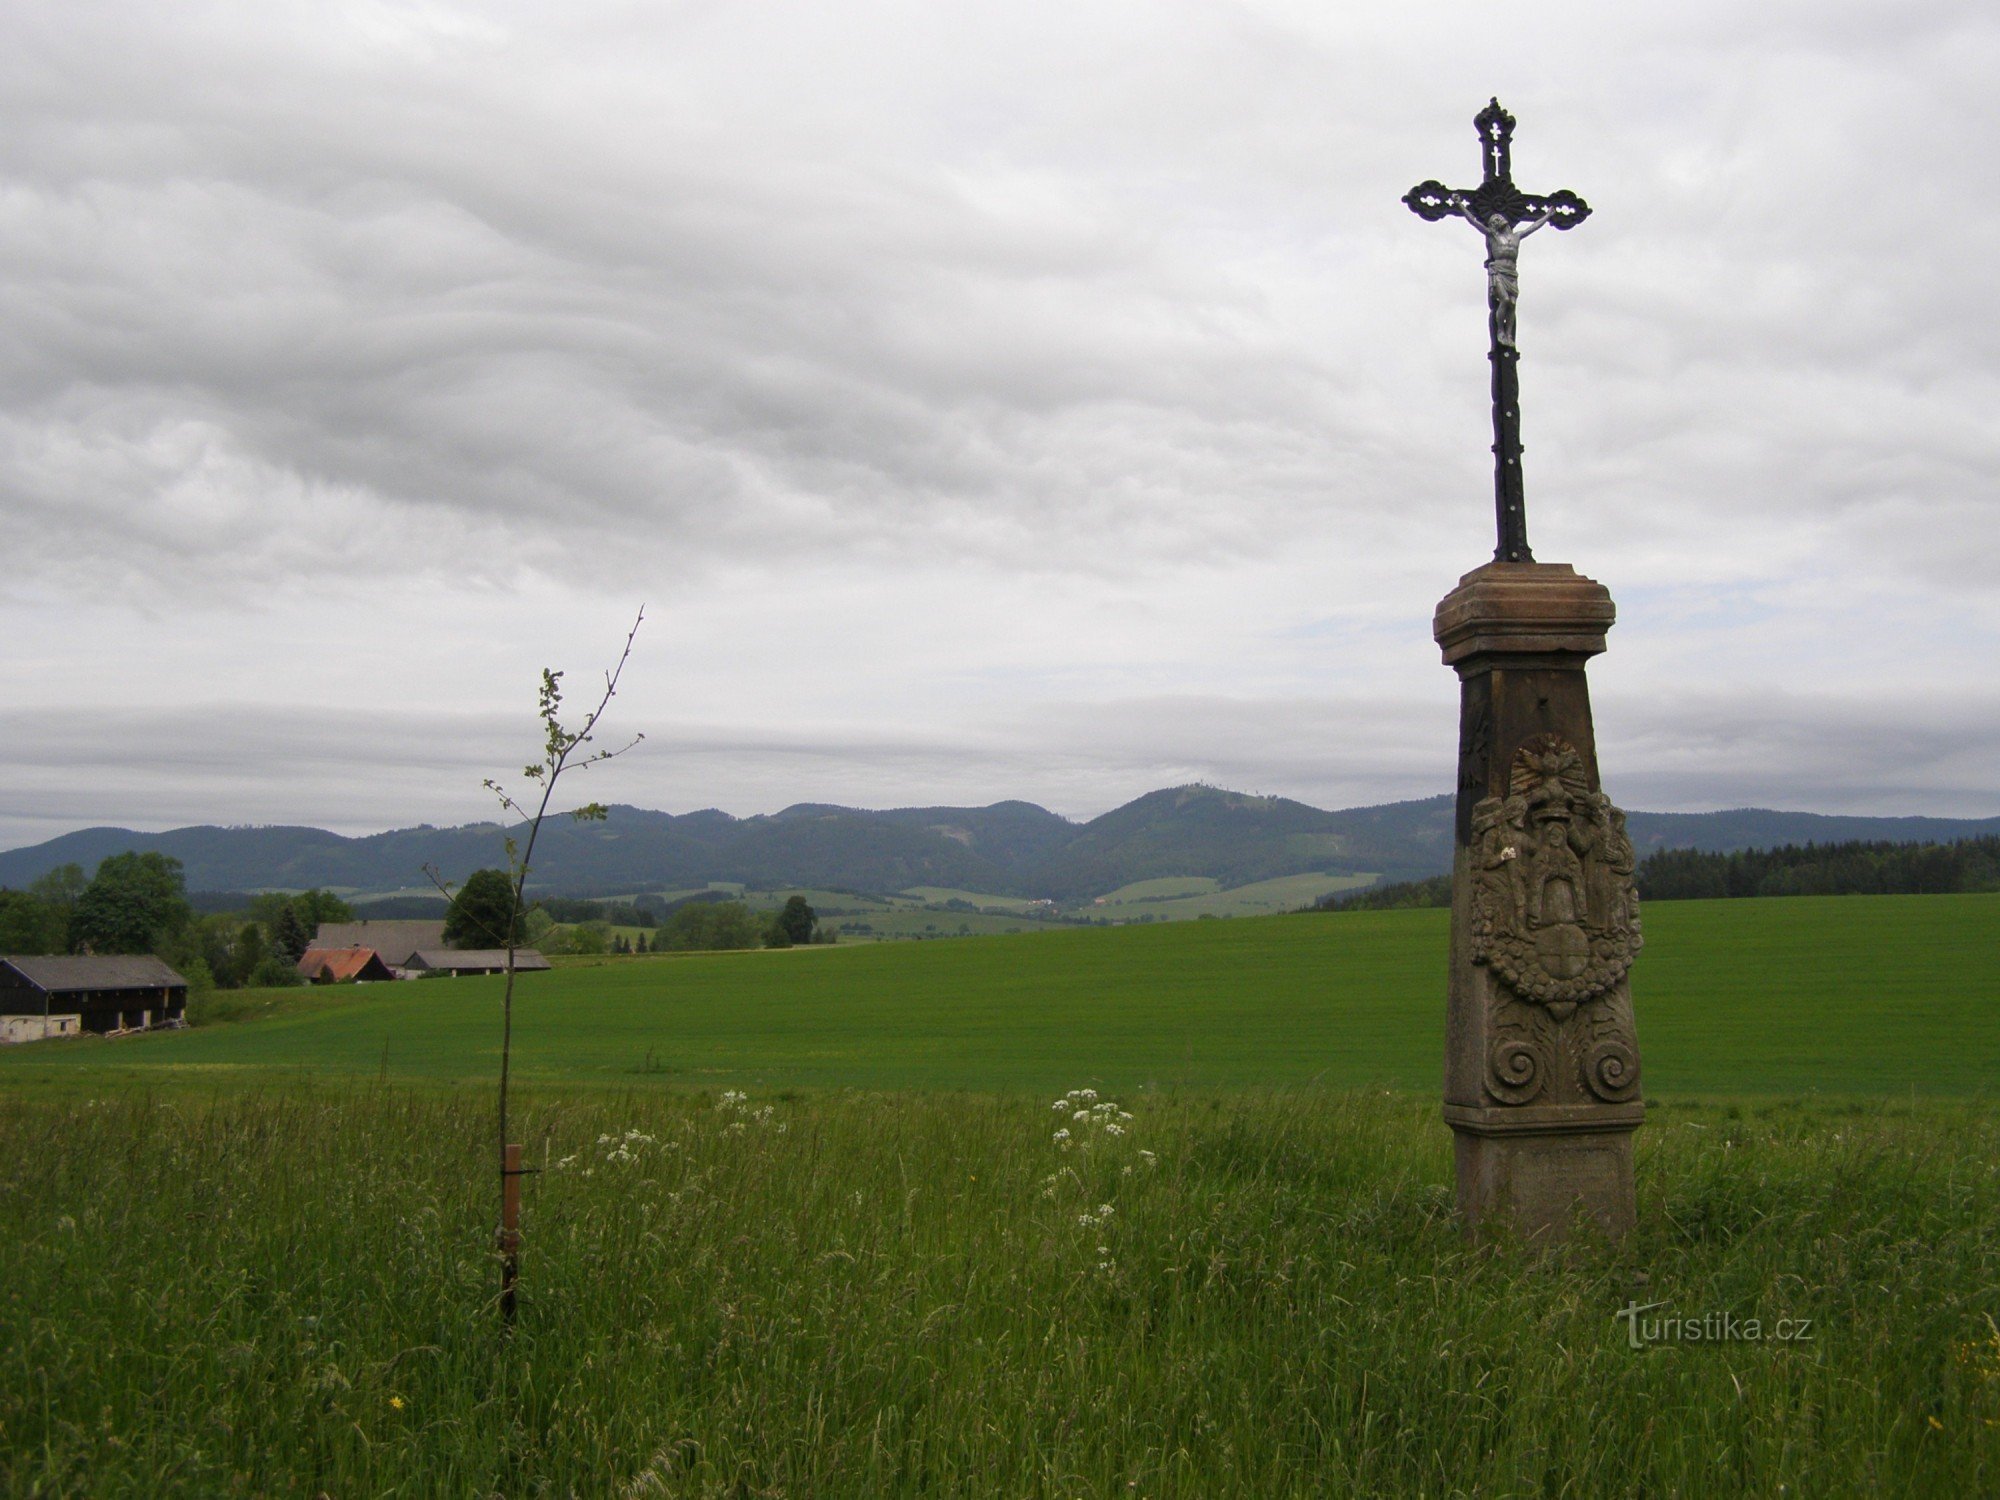 Näkymä Javoří-vuorille - lähellä ristiä